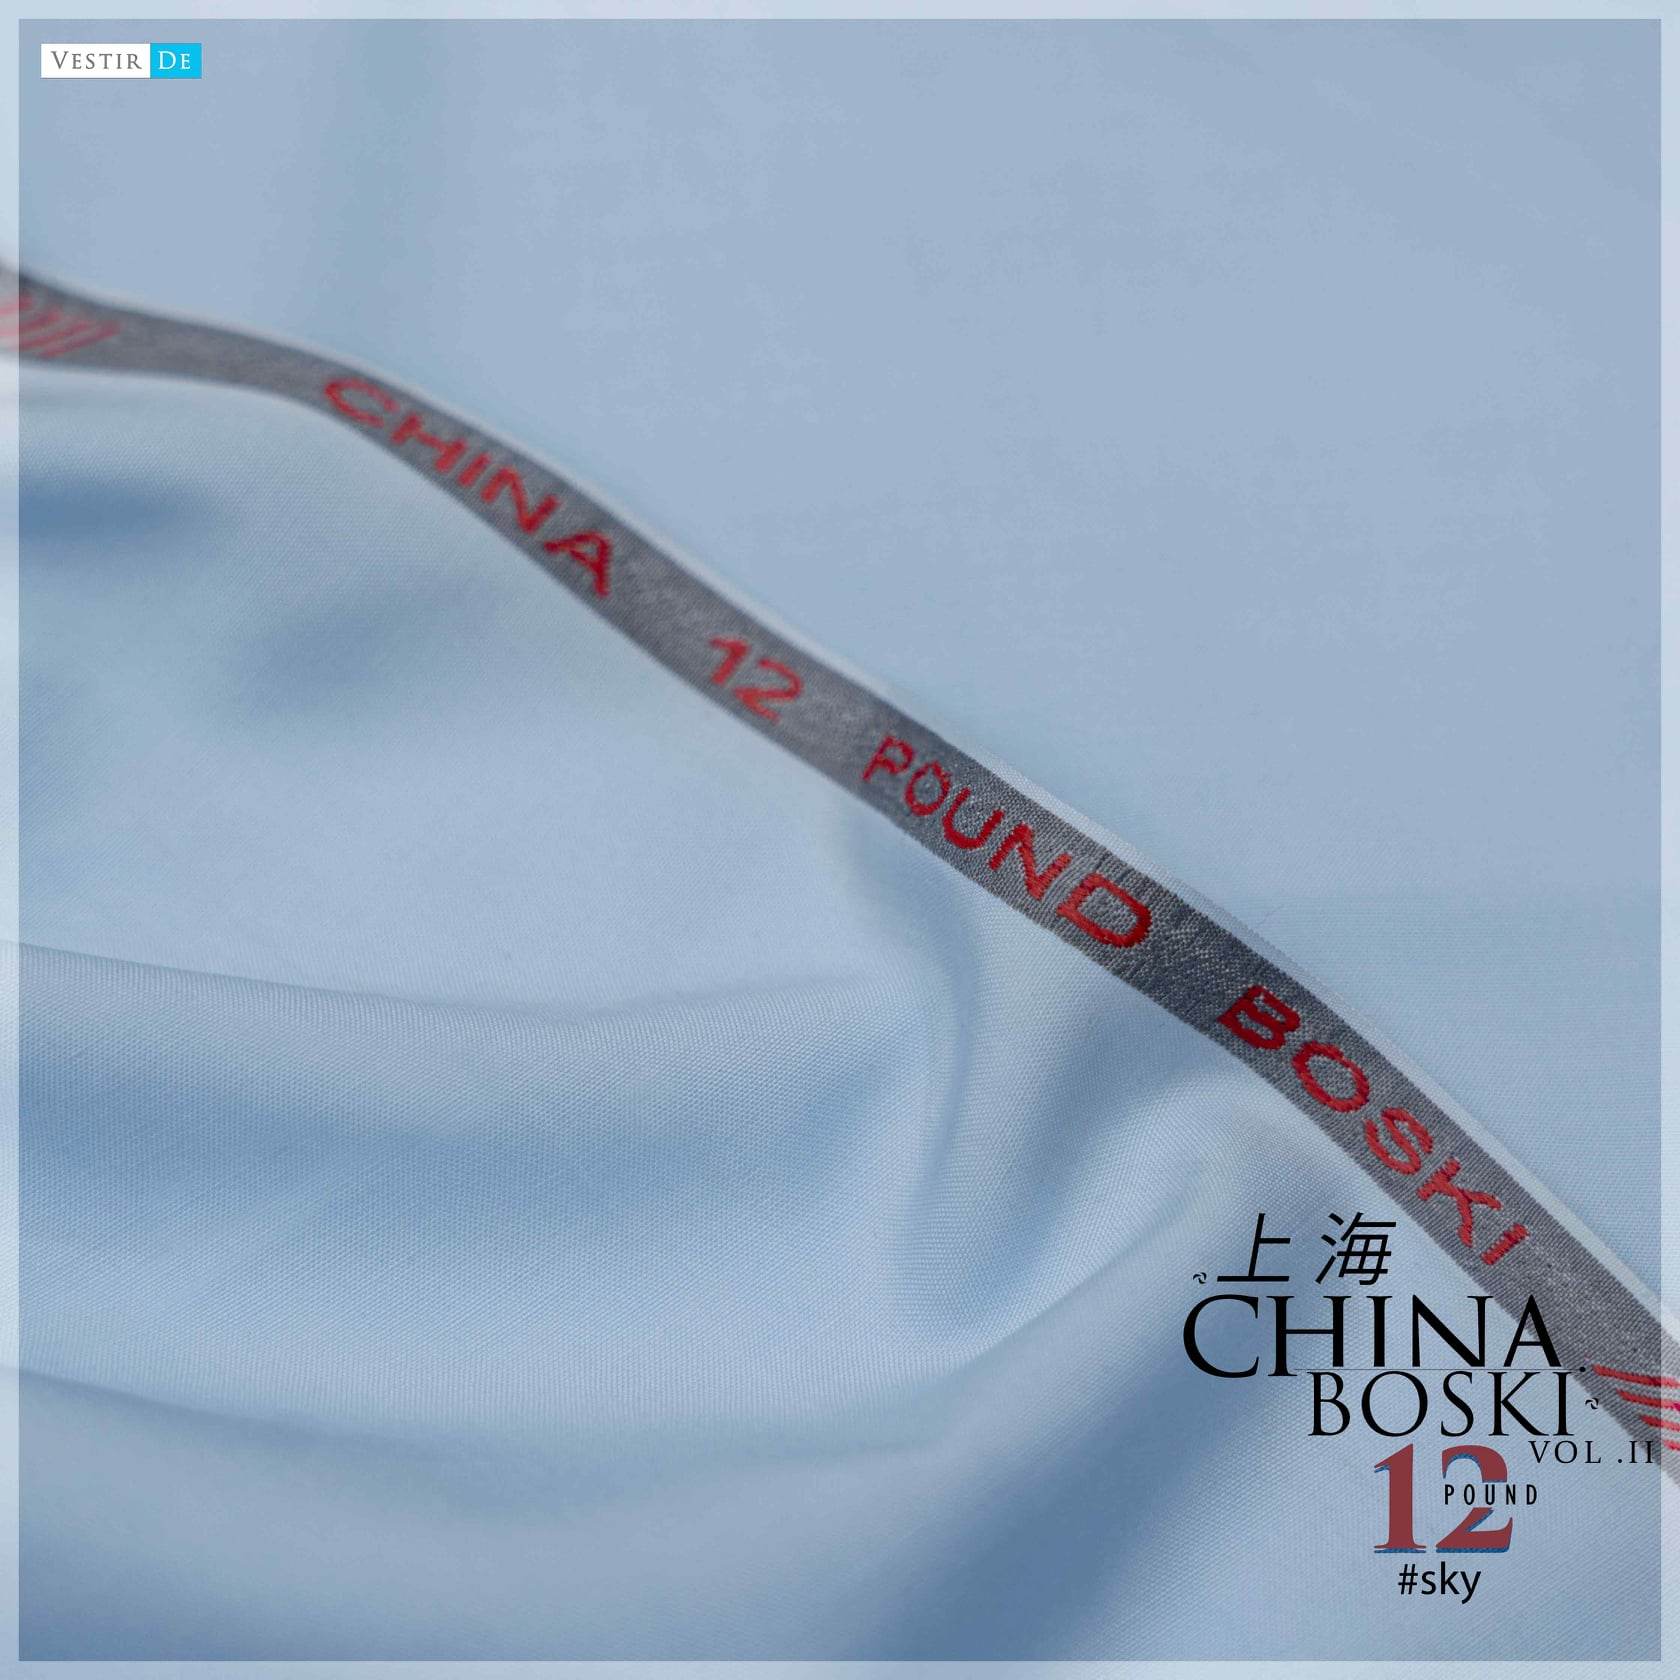 China Boski 12 Pound Vol II